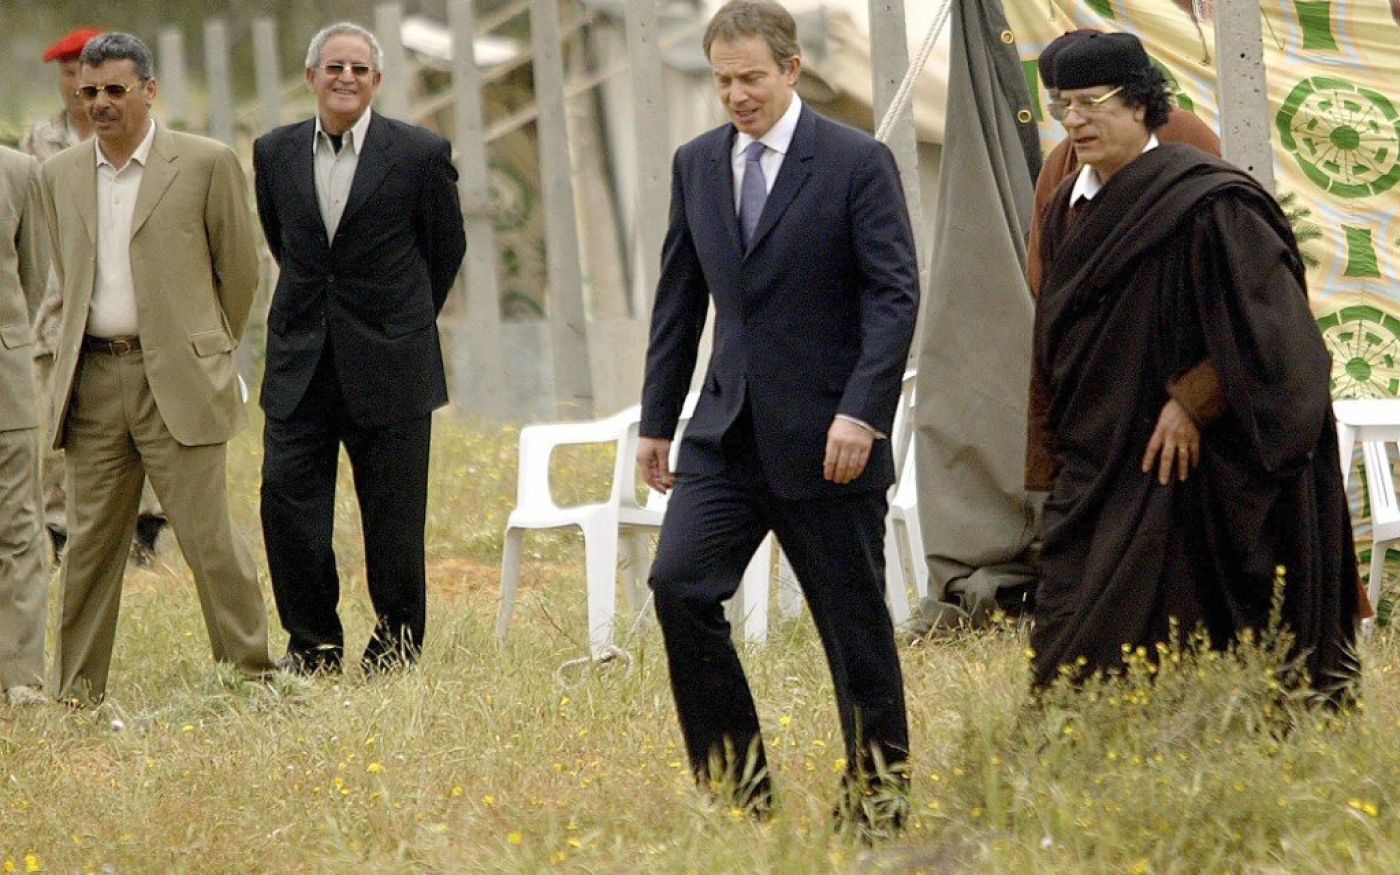 Daad Sharab décrit Tony Blair, photographié ici avec Mouammar Kadhafi en 2004, comme un « vautour planant au-dessus de la Libye » (AFP)